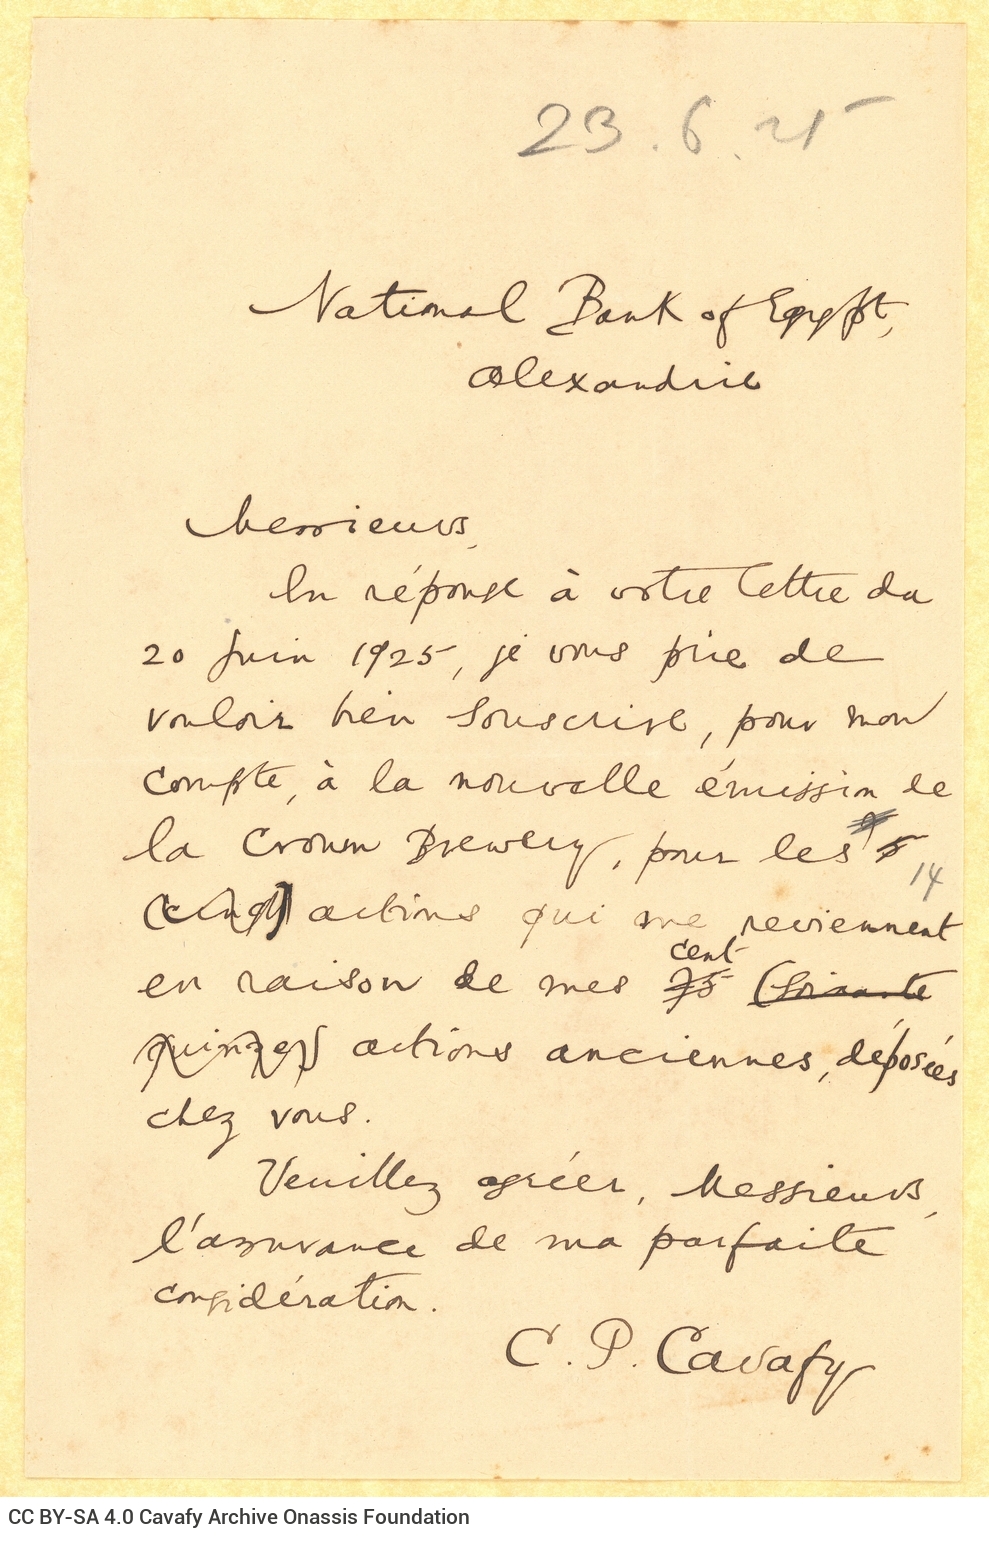 Υπογεγραμμένο χειρόγραφο αντίγραφο επιστολής του Καβάφη προς την Ε�